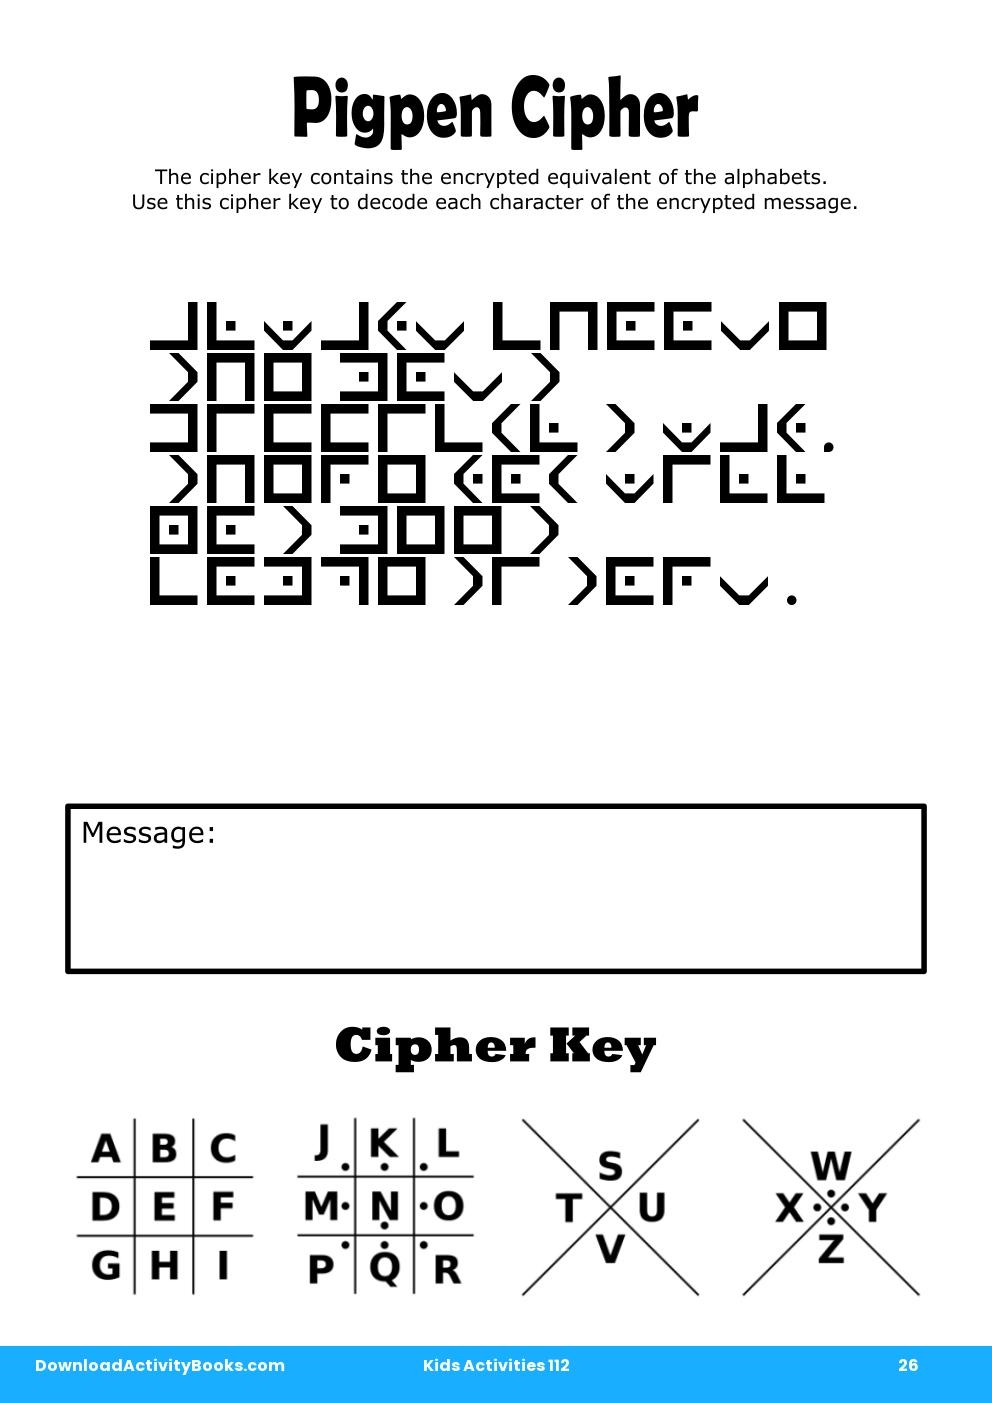 Pigpen Cipher in Kids Activities 112